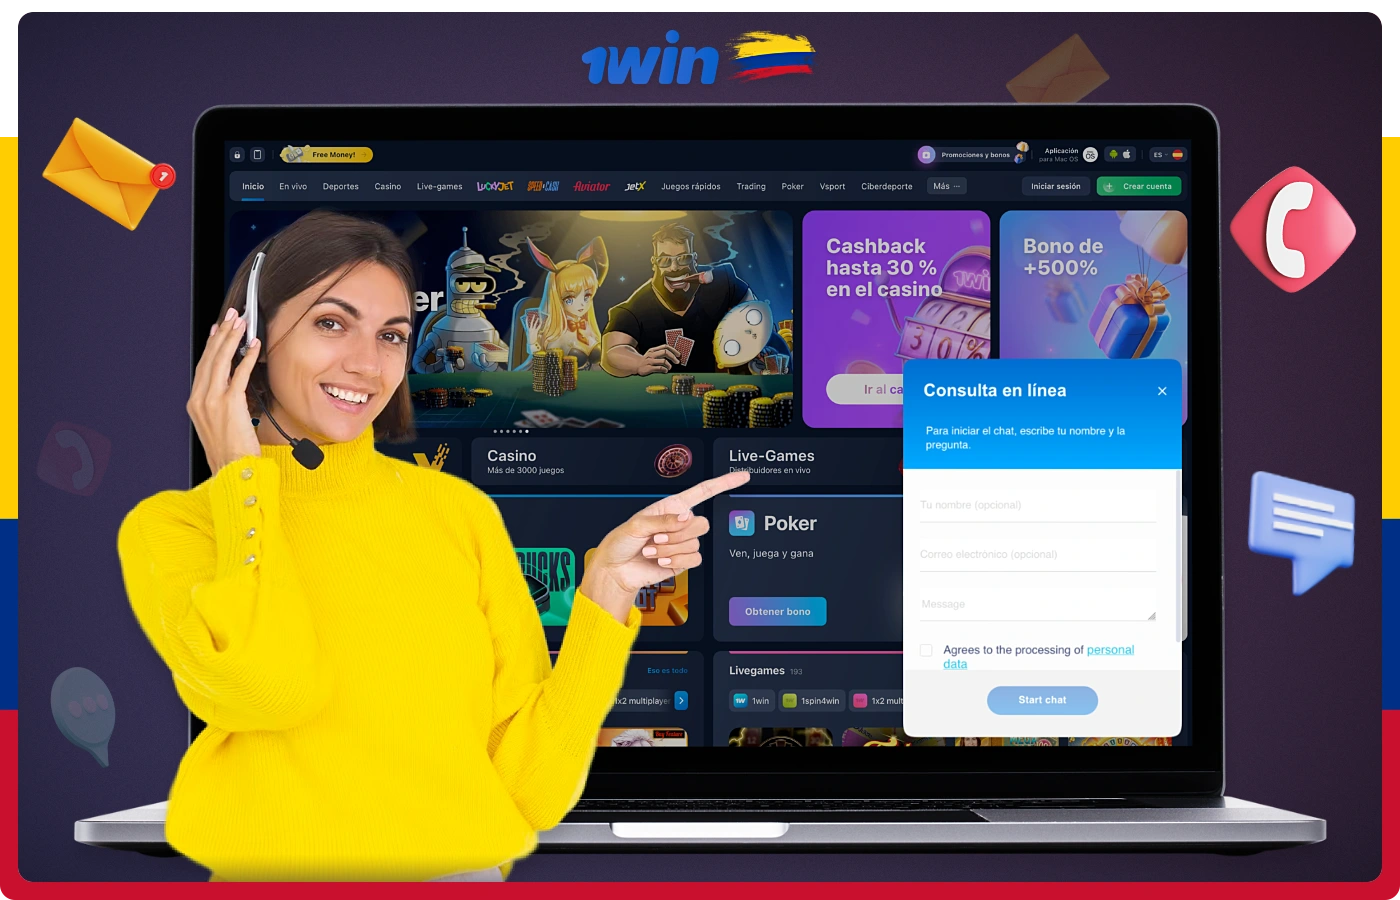 El soporte de 1win puede ser contactado por los usuarios colombianos utilizando una de las siguientes opciones de contacto